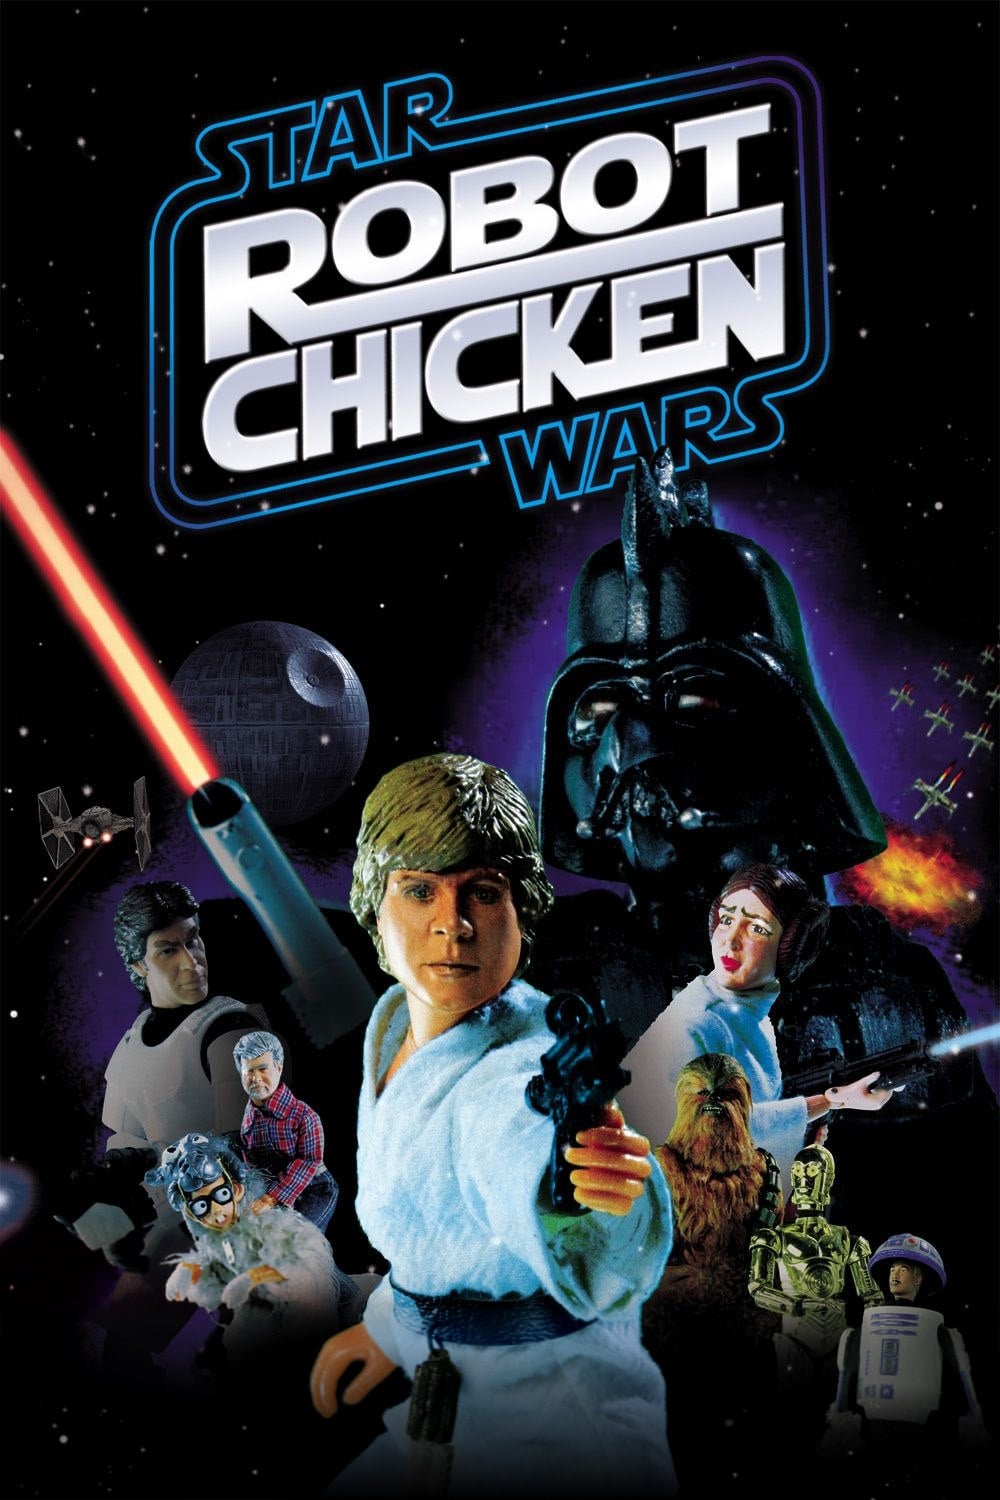 Robot Chicken: Star Wars Episodio I (2007)